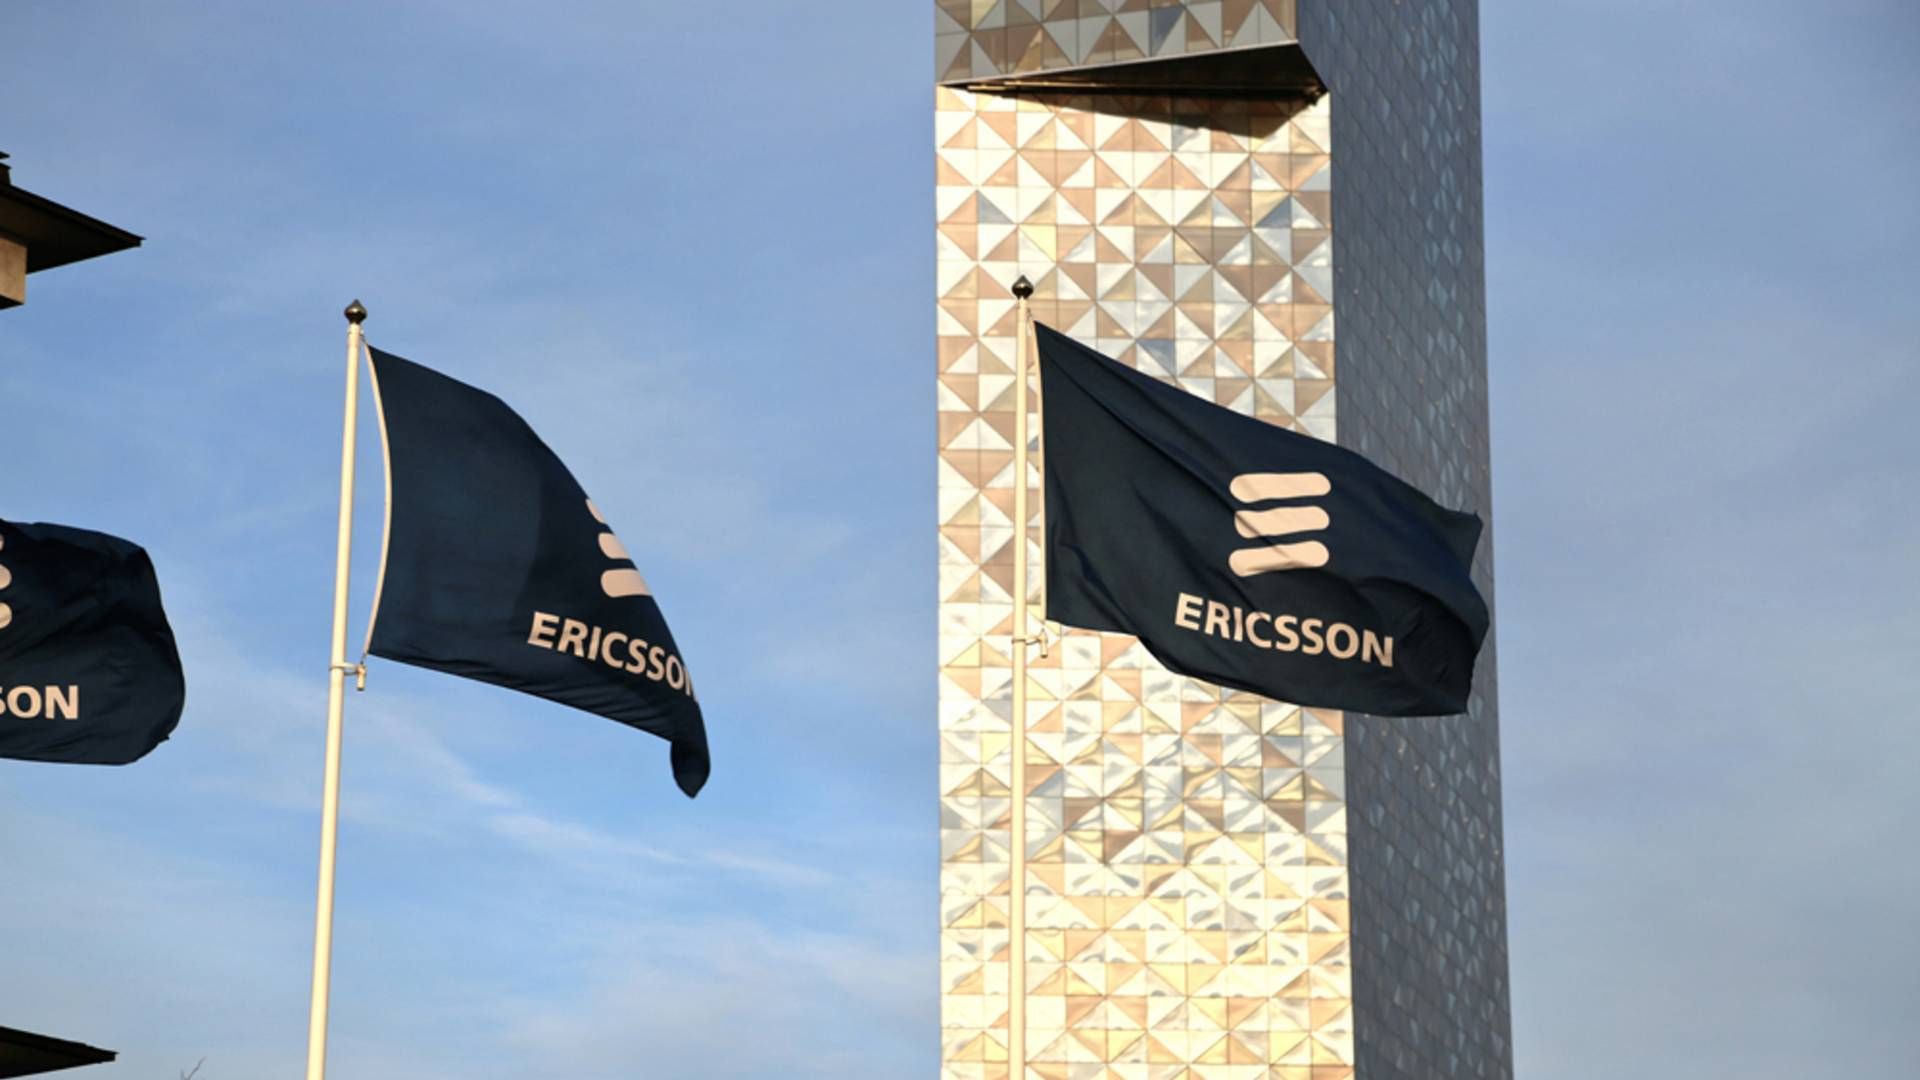 Photo: Ericsson